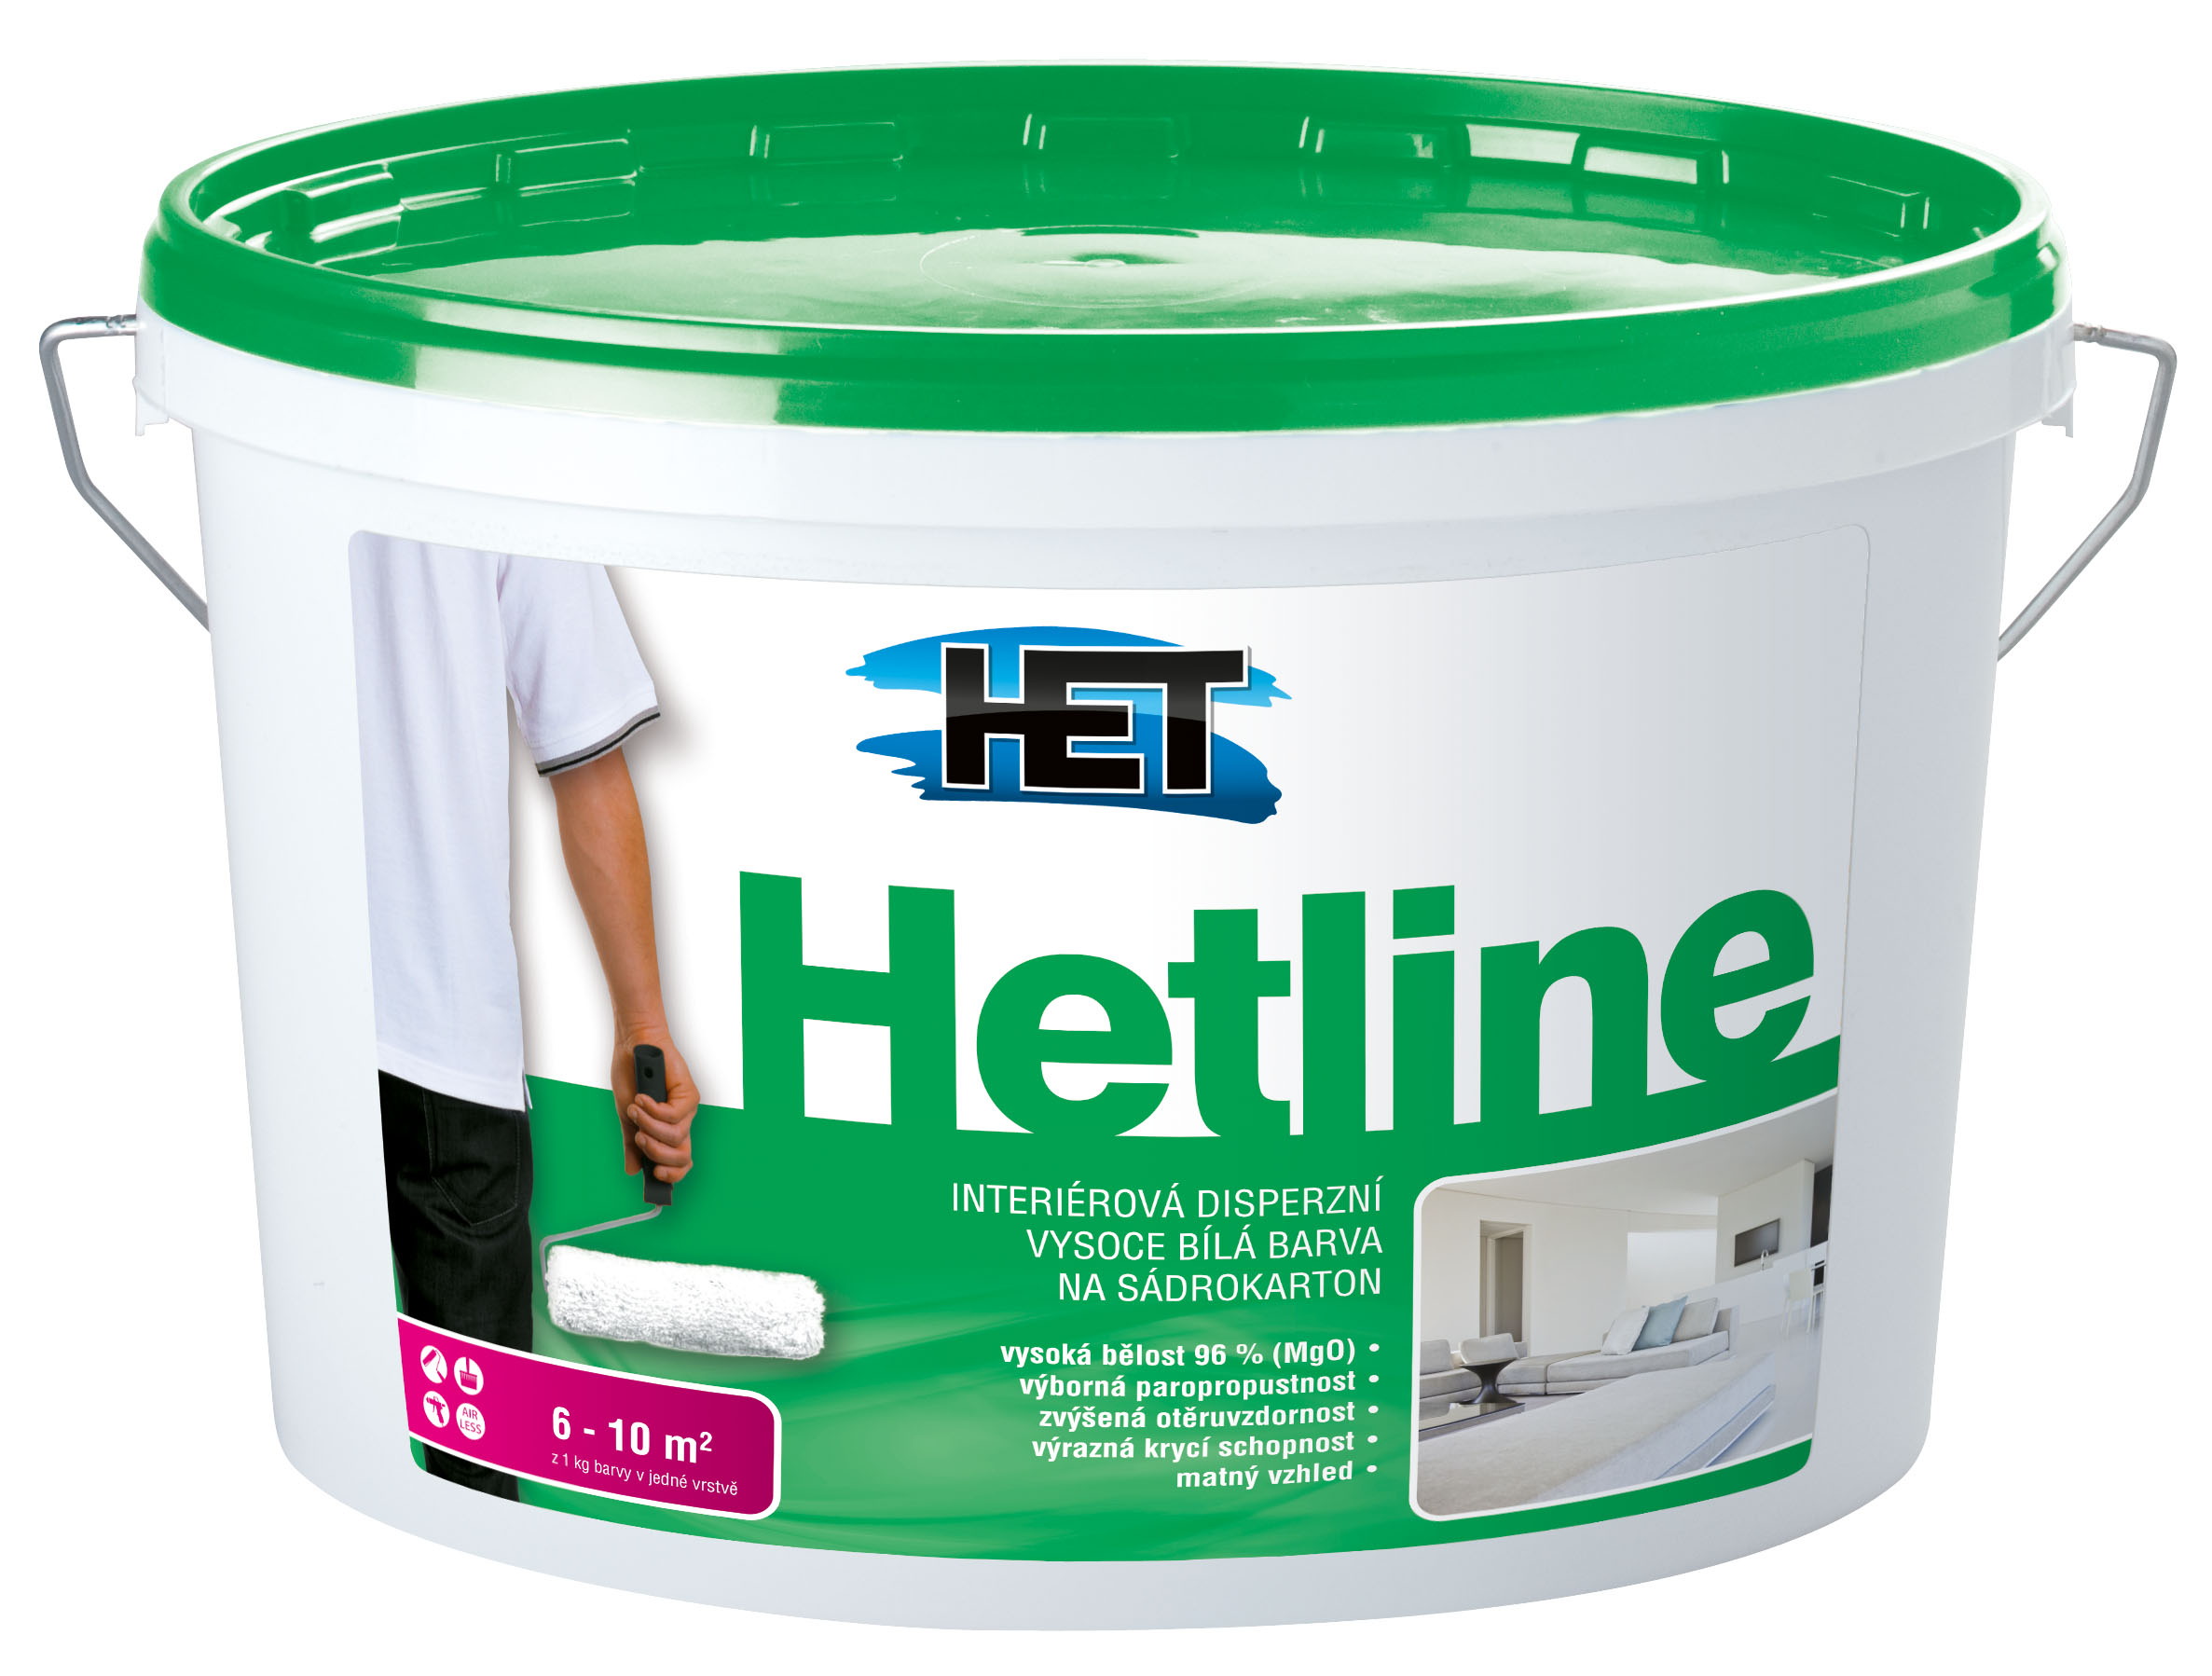 HETLINE – специальные краски для штукатурки и гипсокартона